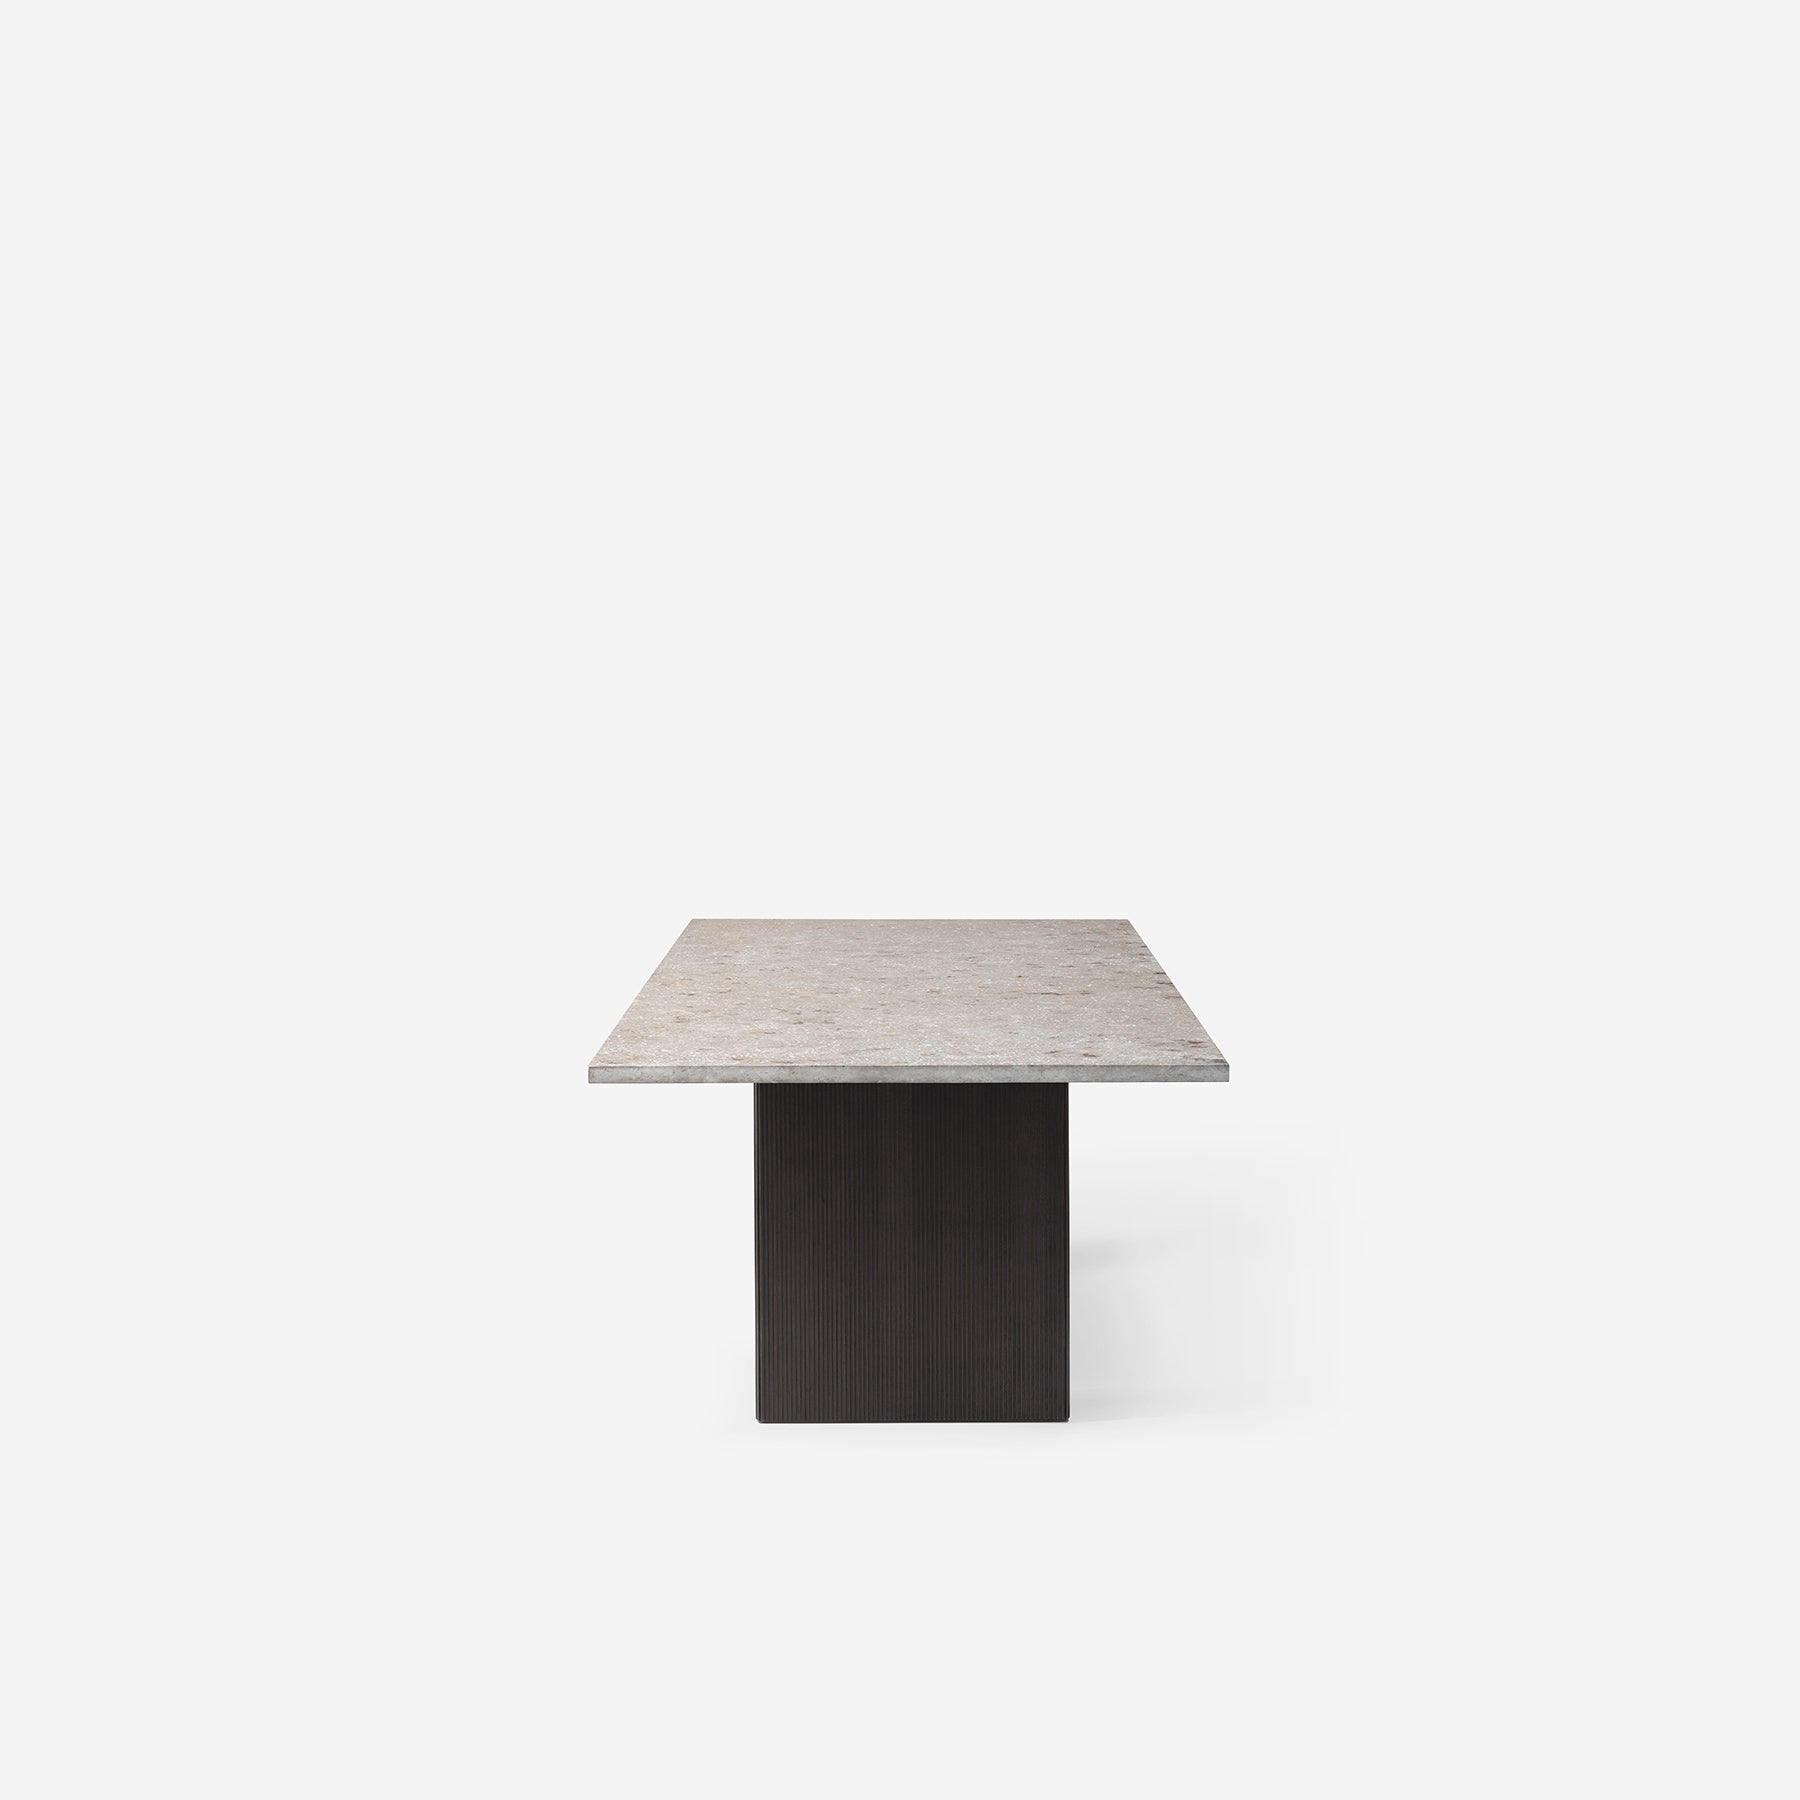 VIPP496 Cabin Square Table w/ stone top - Moleta Munro Limited